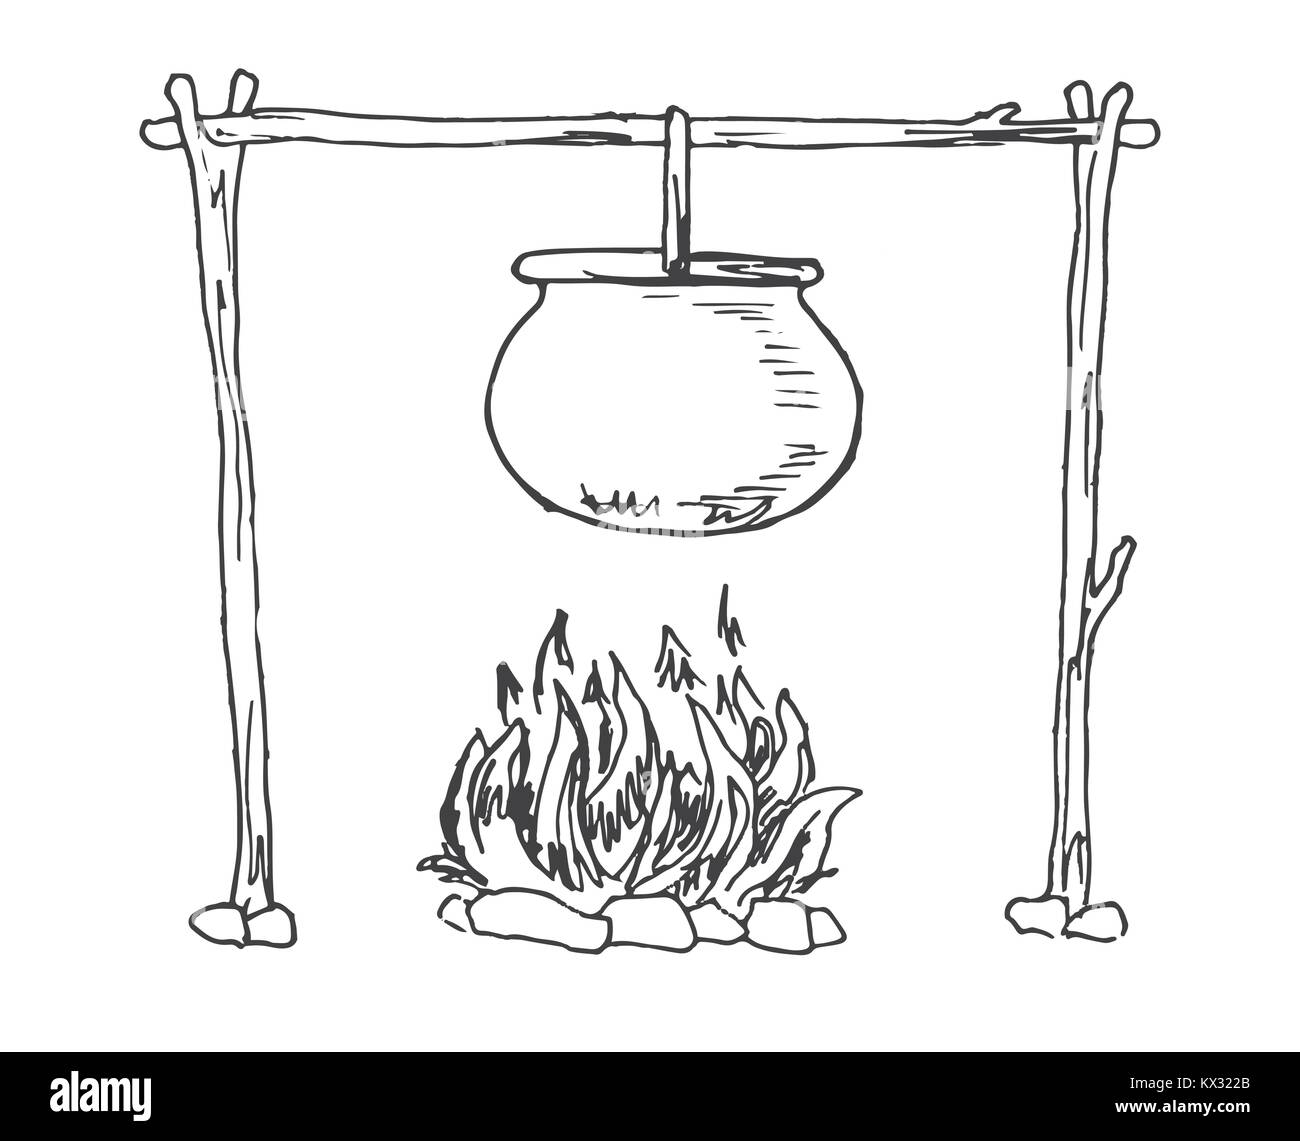 Feu de joie. Marmite suspendue au-dessus de l'incendie. Vector illustration d'un croquis de style. Illustration de Vecteur